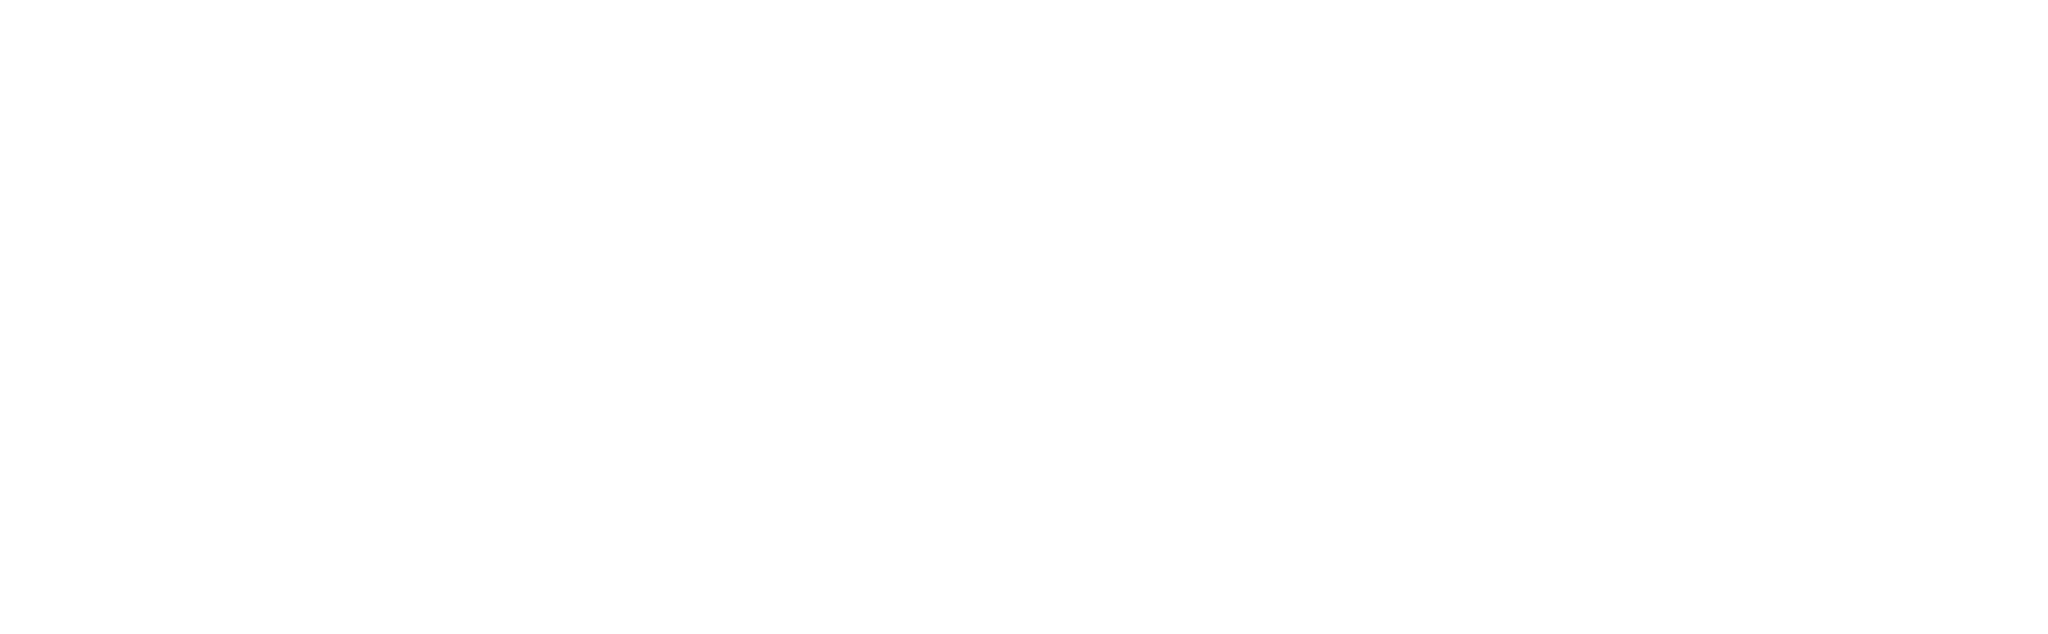 logo_hersleth_entreprenor-kloss_ved_siden